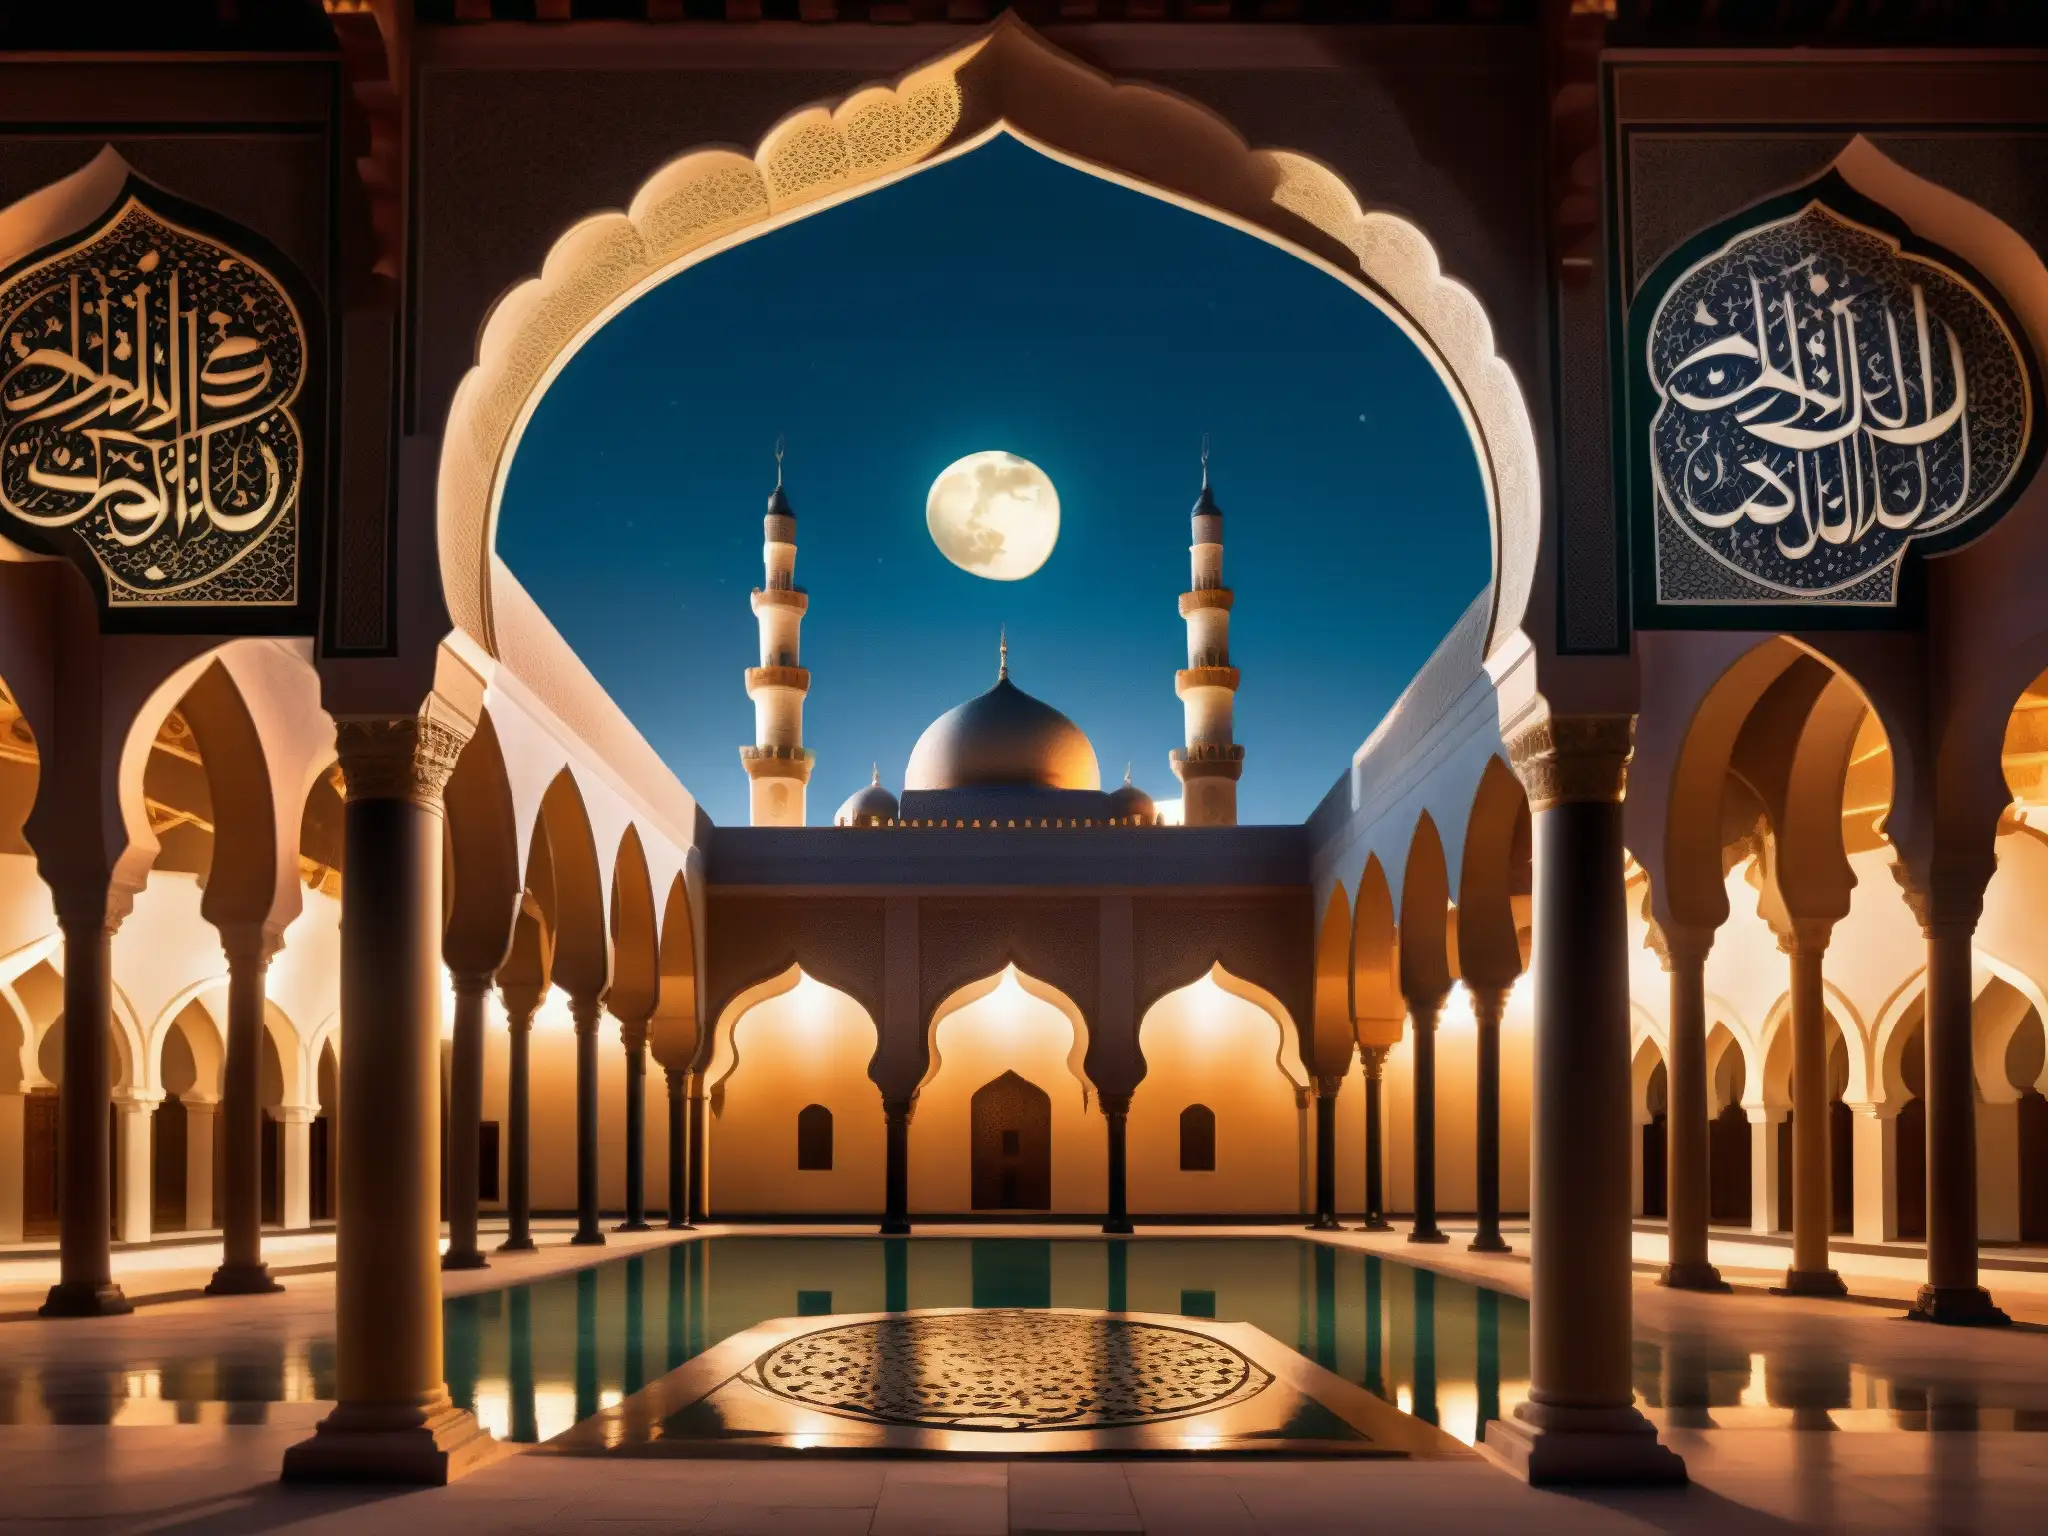 Un patio de mezquita iluminado por la luna con caligrafía árabe y una atmósfera mística evocando los Jinn en el Islam del sur